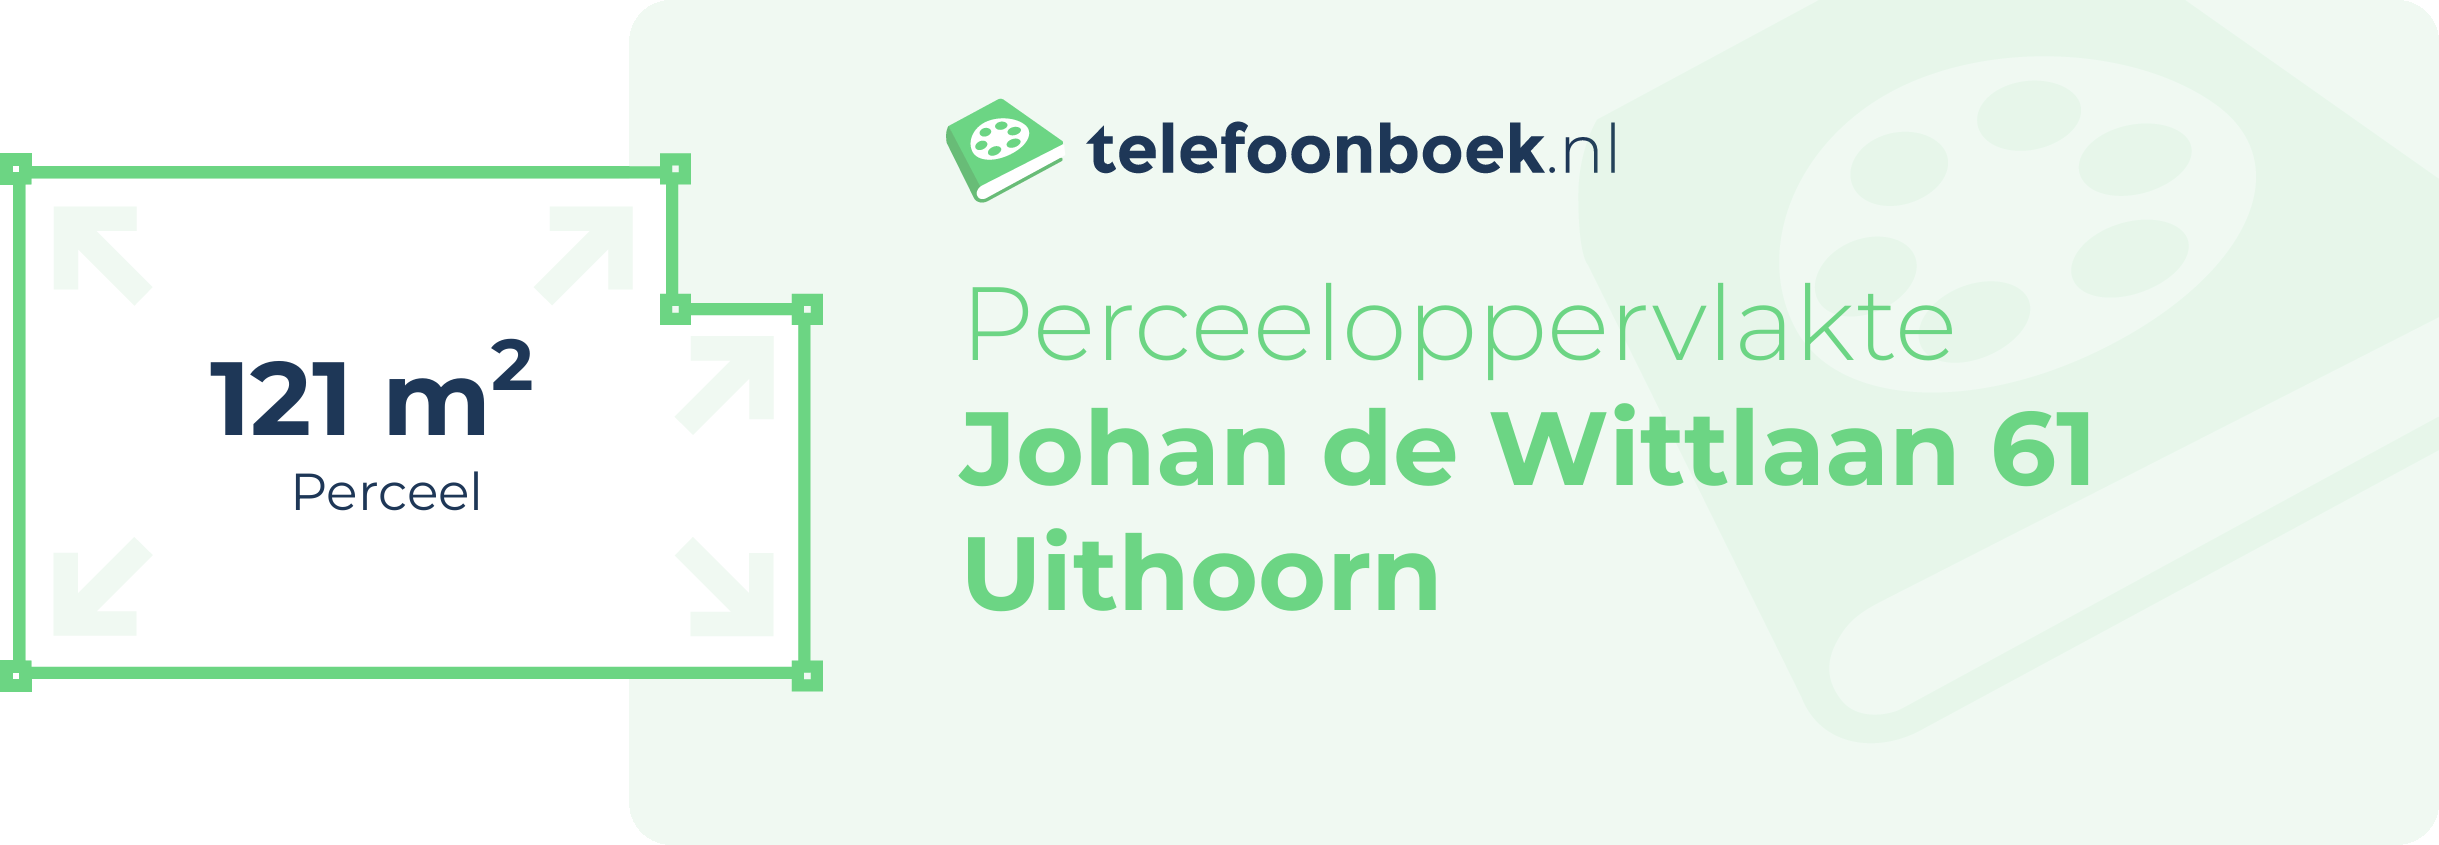 Perceeloppervlakte Johan De Wittlaan 61 Uithoorn